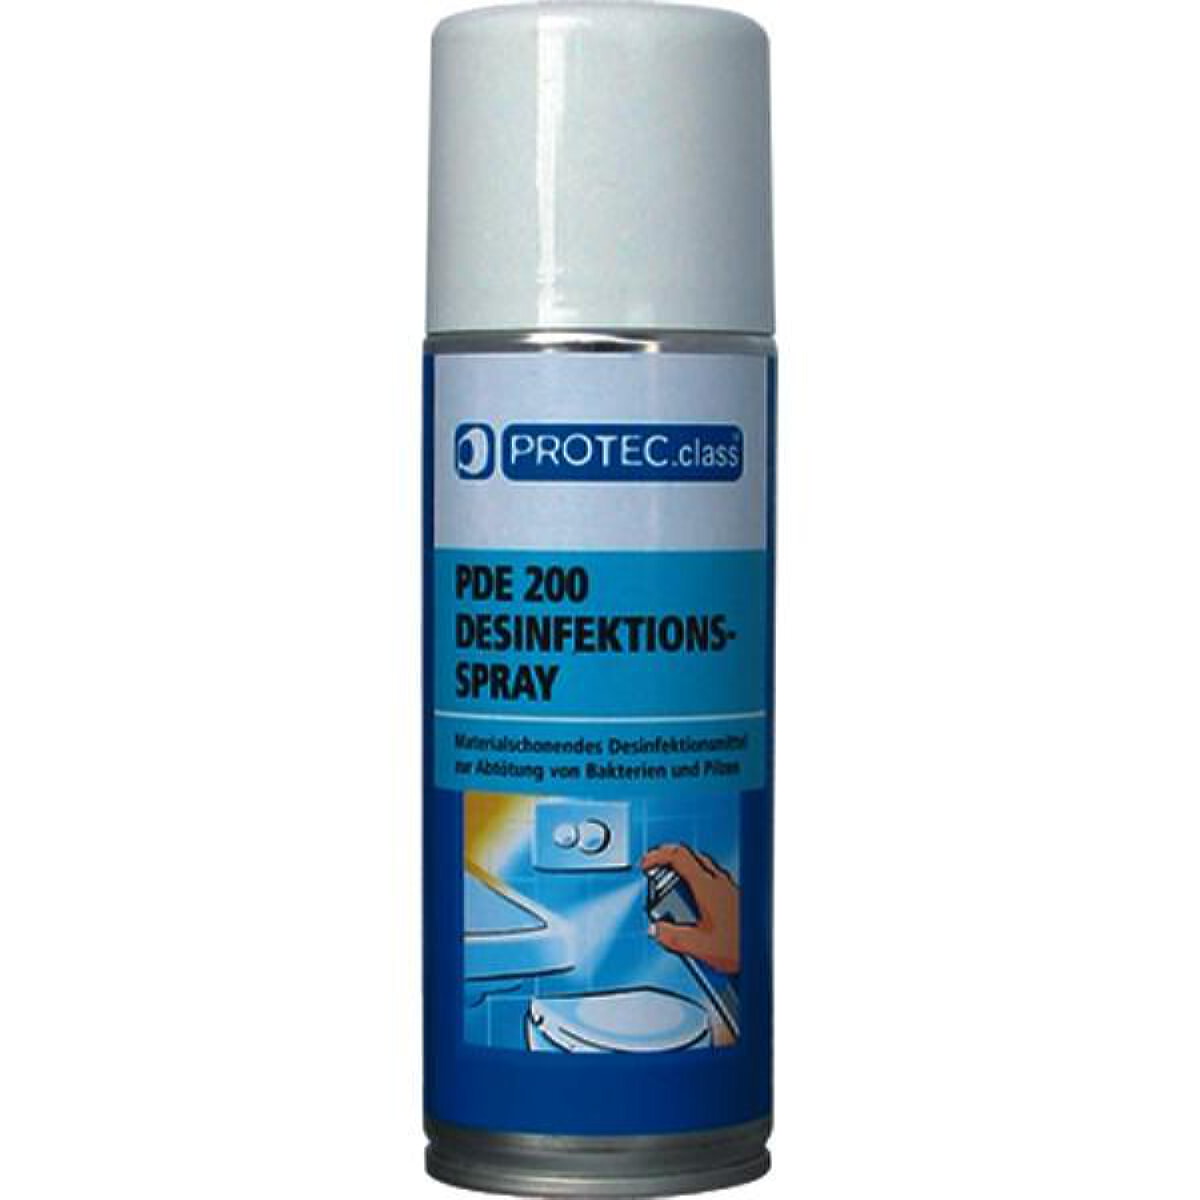 PROTEC.class Desinfektionsspray 200ml PDE 200 05100975